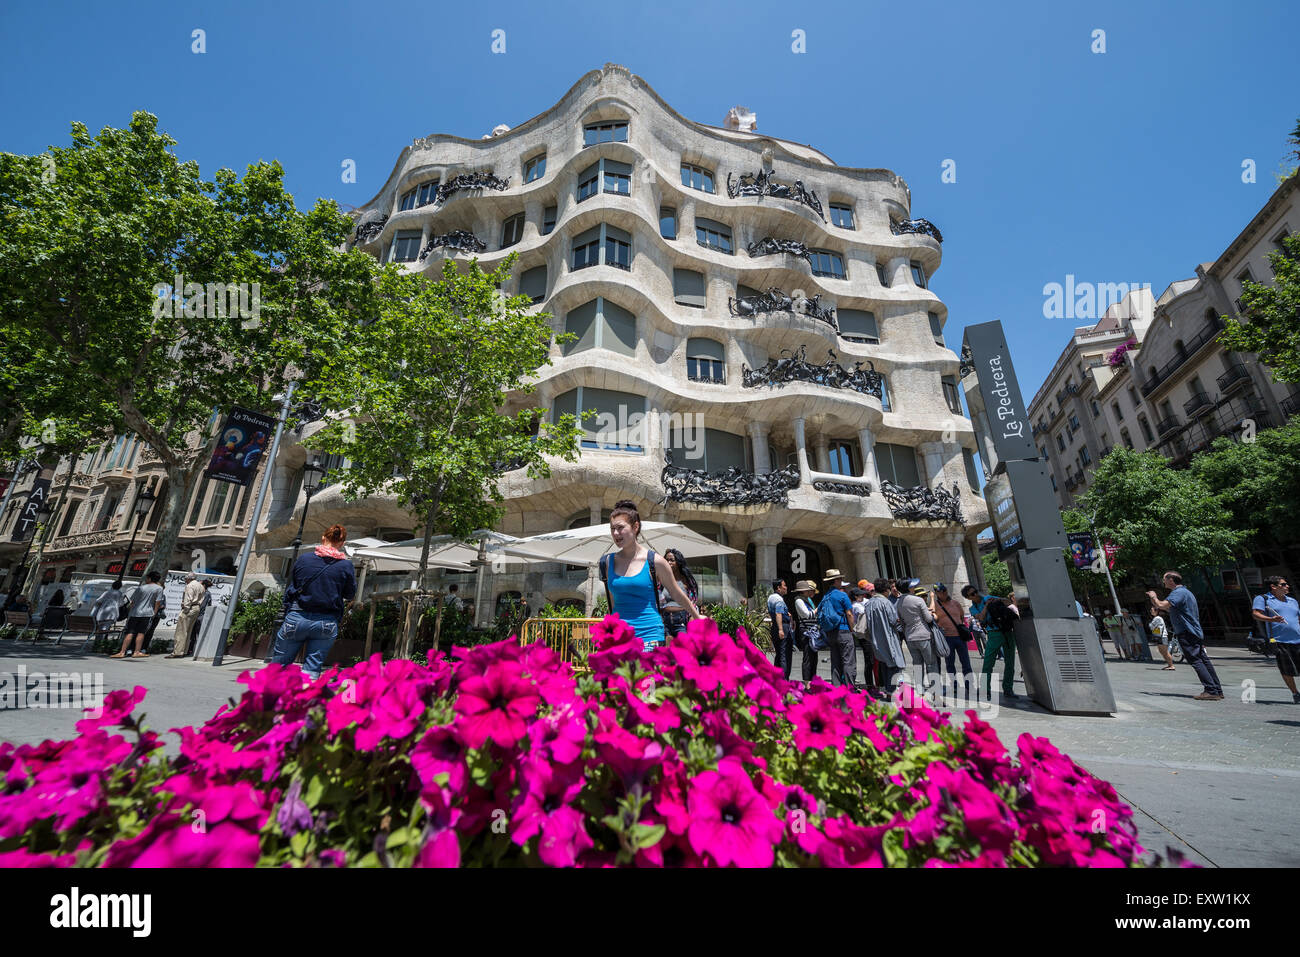 Casa Mila building also called La Pedrera designed by Antoni Gaudi at Passeig de Gracia avenue in Barcelona, Spain Stock Photo